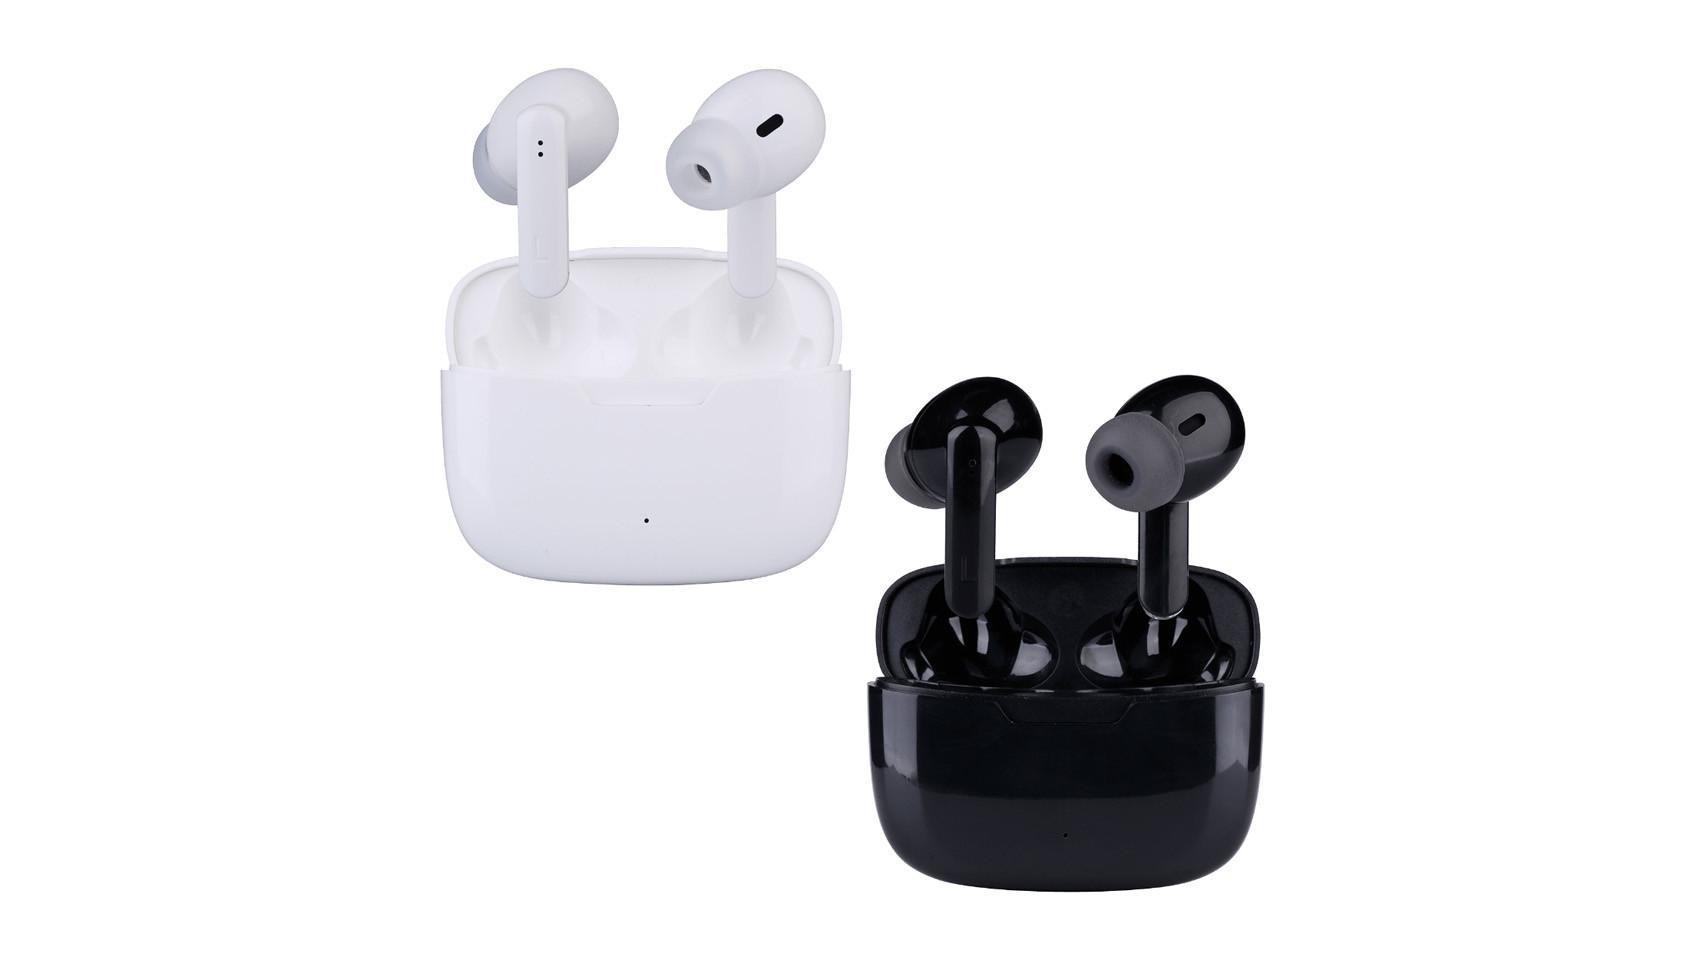 Estos AirPods son uno de los auriculares Bluetooth más económicos de Apple  y ahora son más baratos con esta oferta